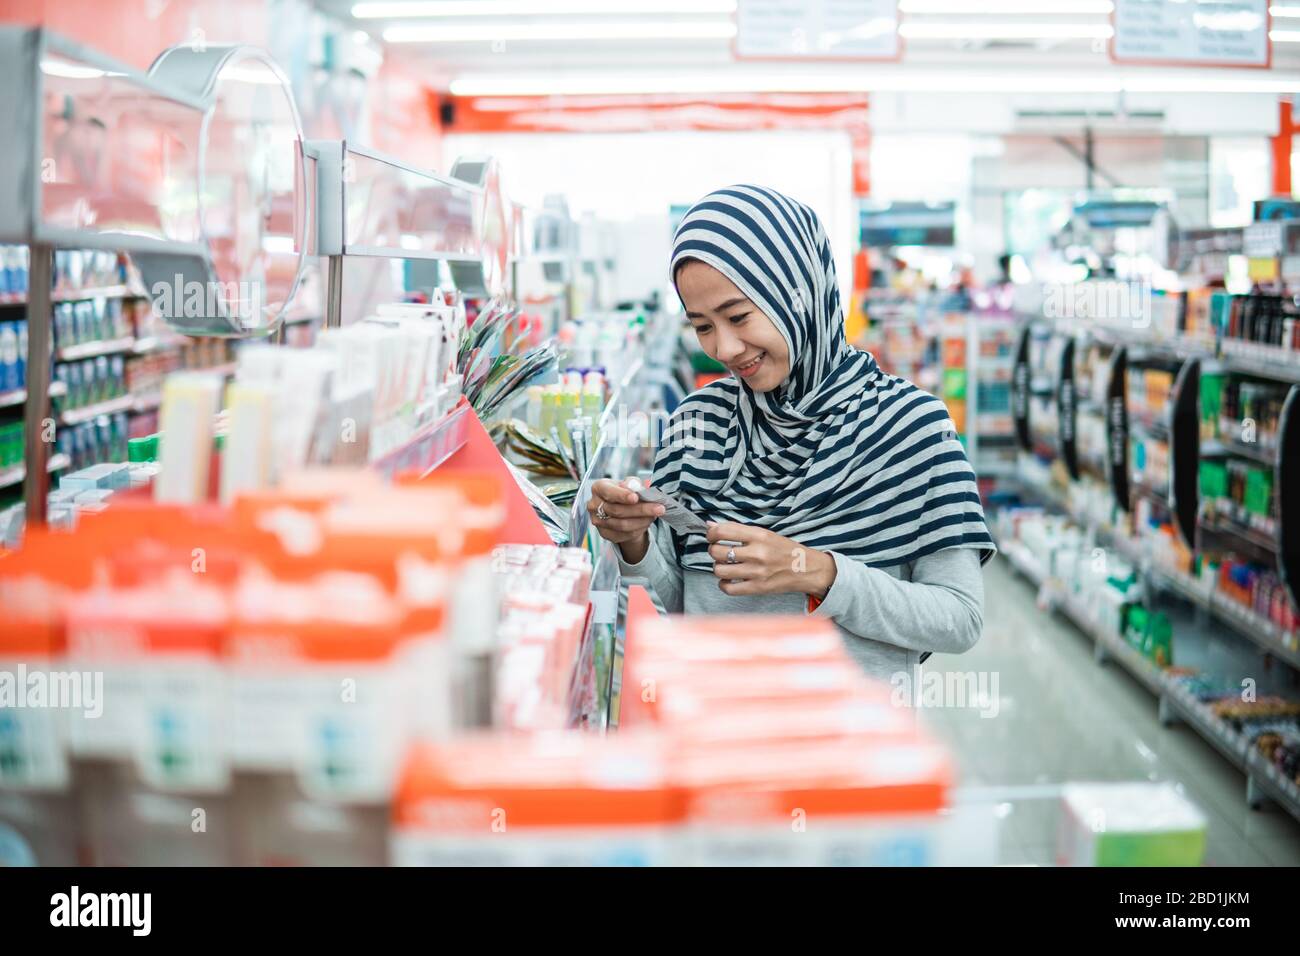 muslimische asiaten kaufen im Supermarkt einkaufen und etwas Produkt kaufen Stockfoto